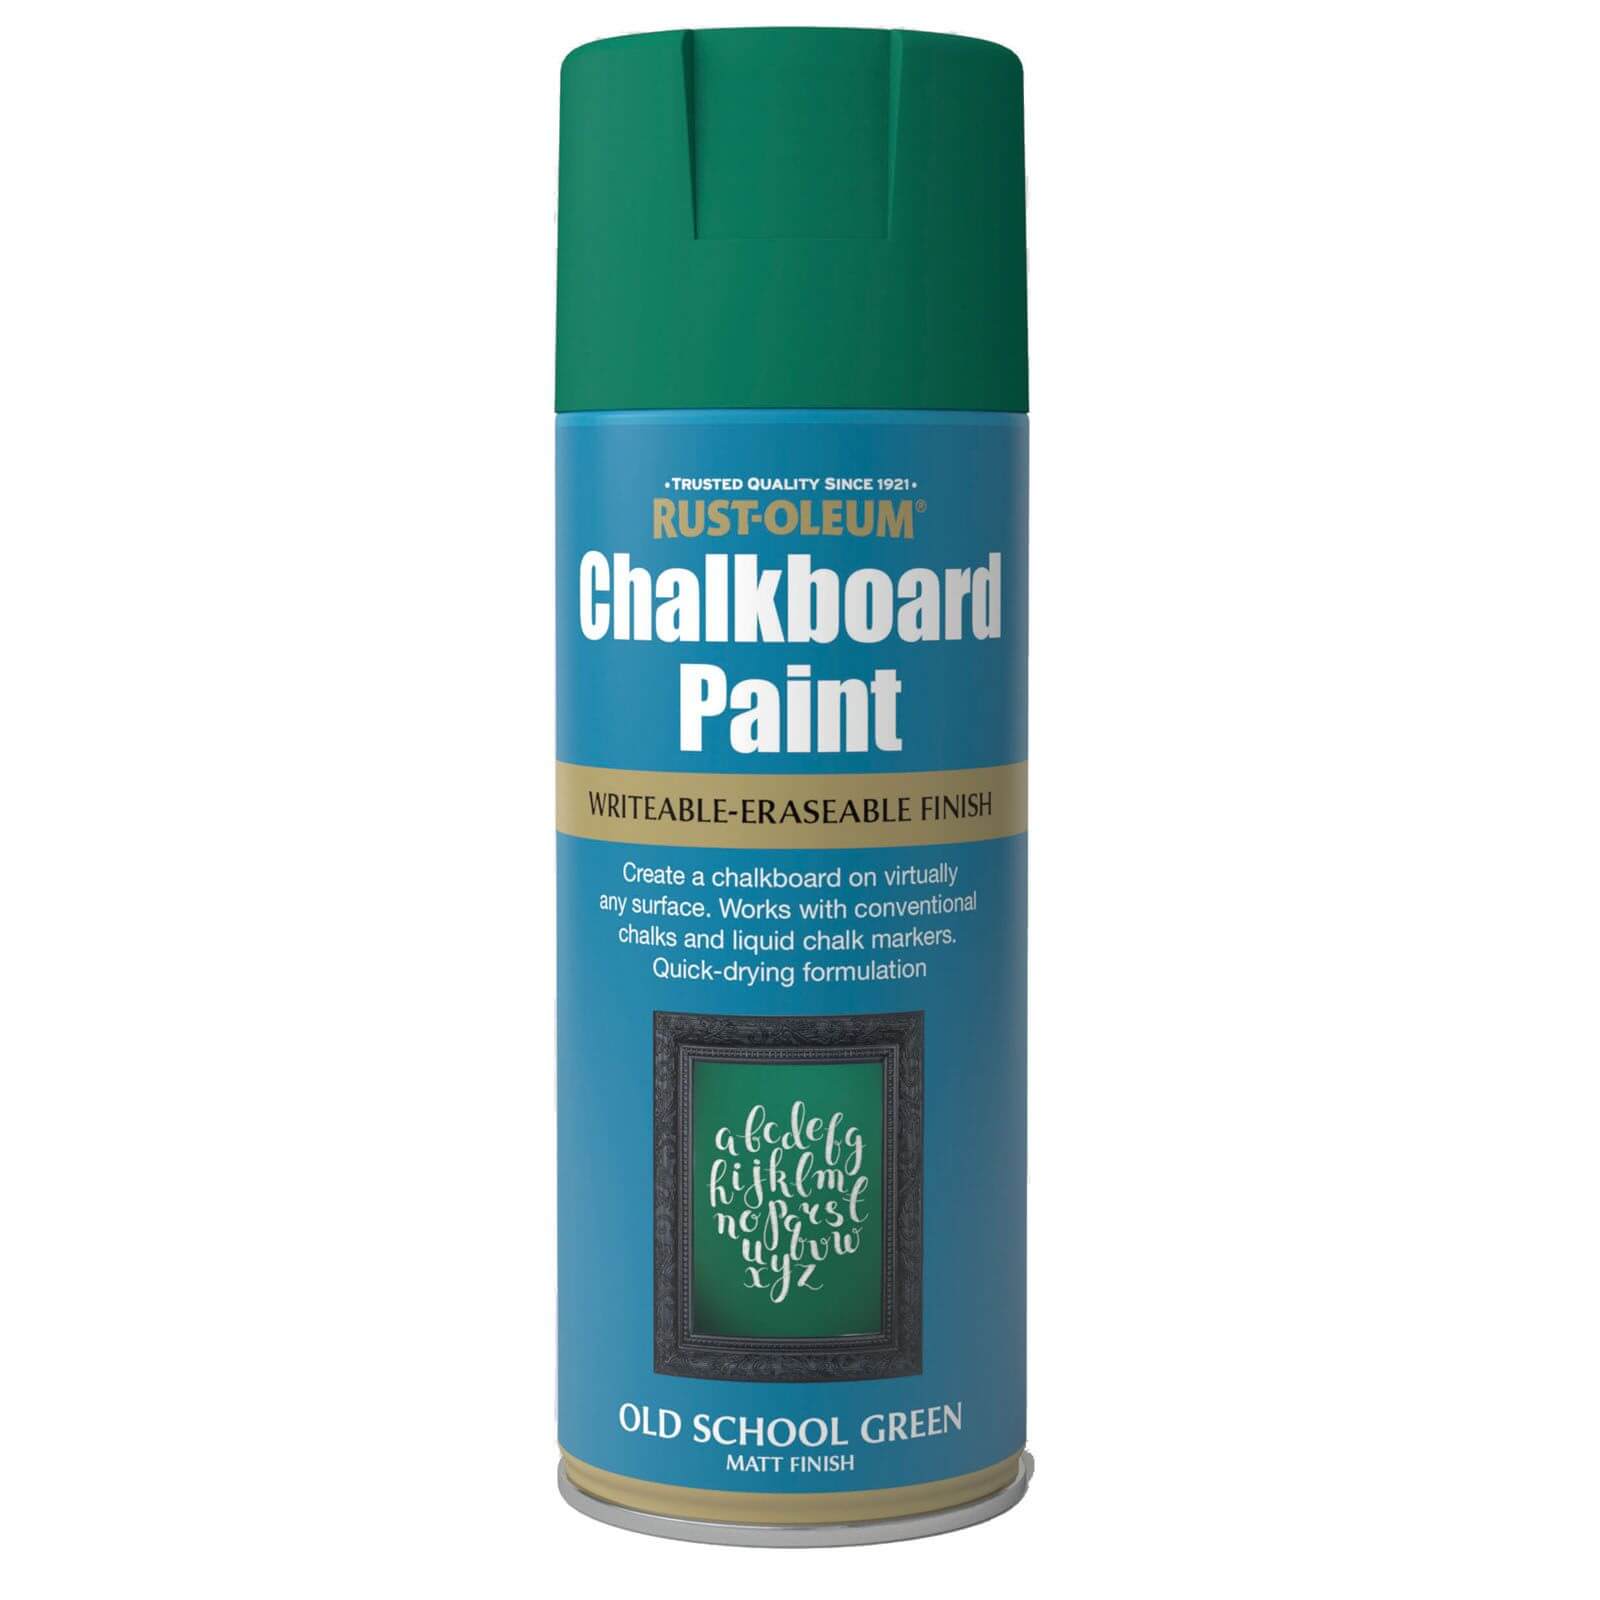 Rust-Oleum Spray Paint Chalkboard Old School Green - 400ml